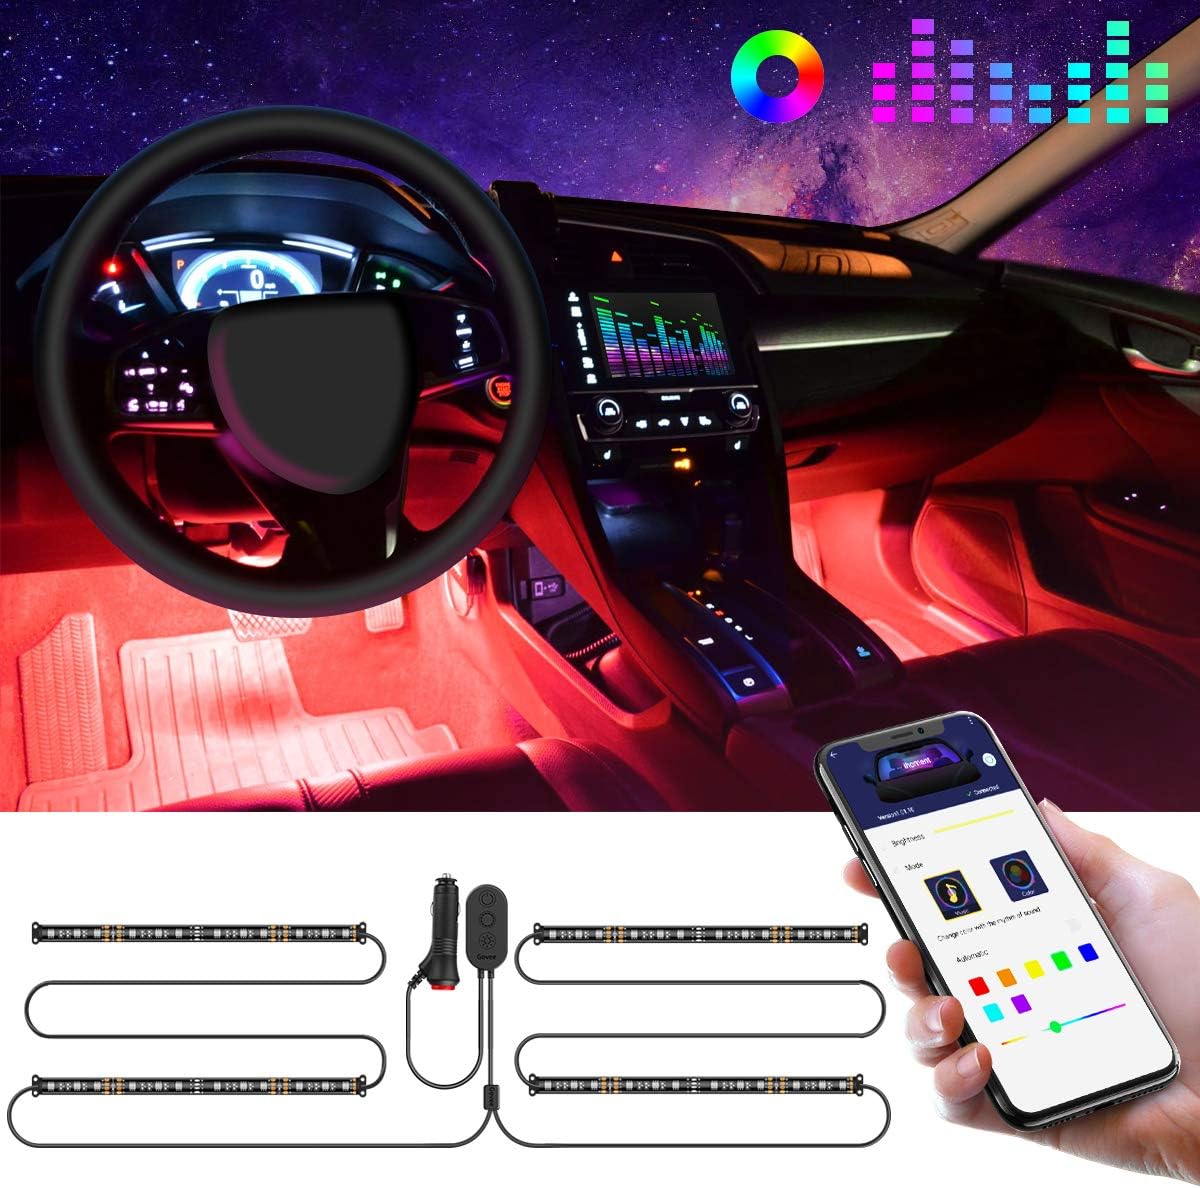 LED Innenbeleuchtung für Auto mit Musik Synchronisation als